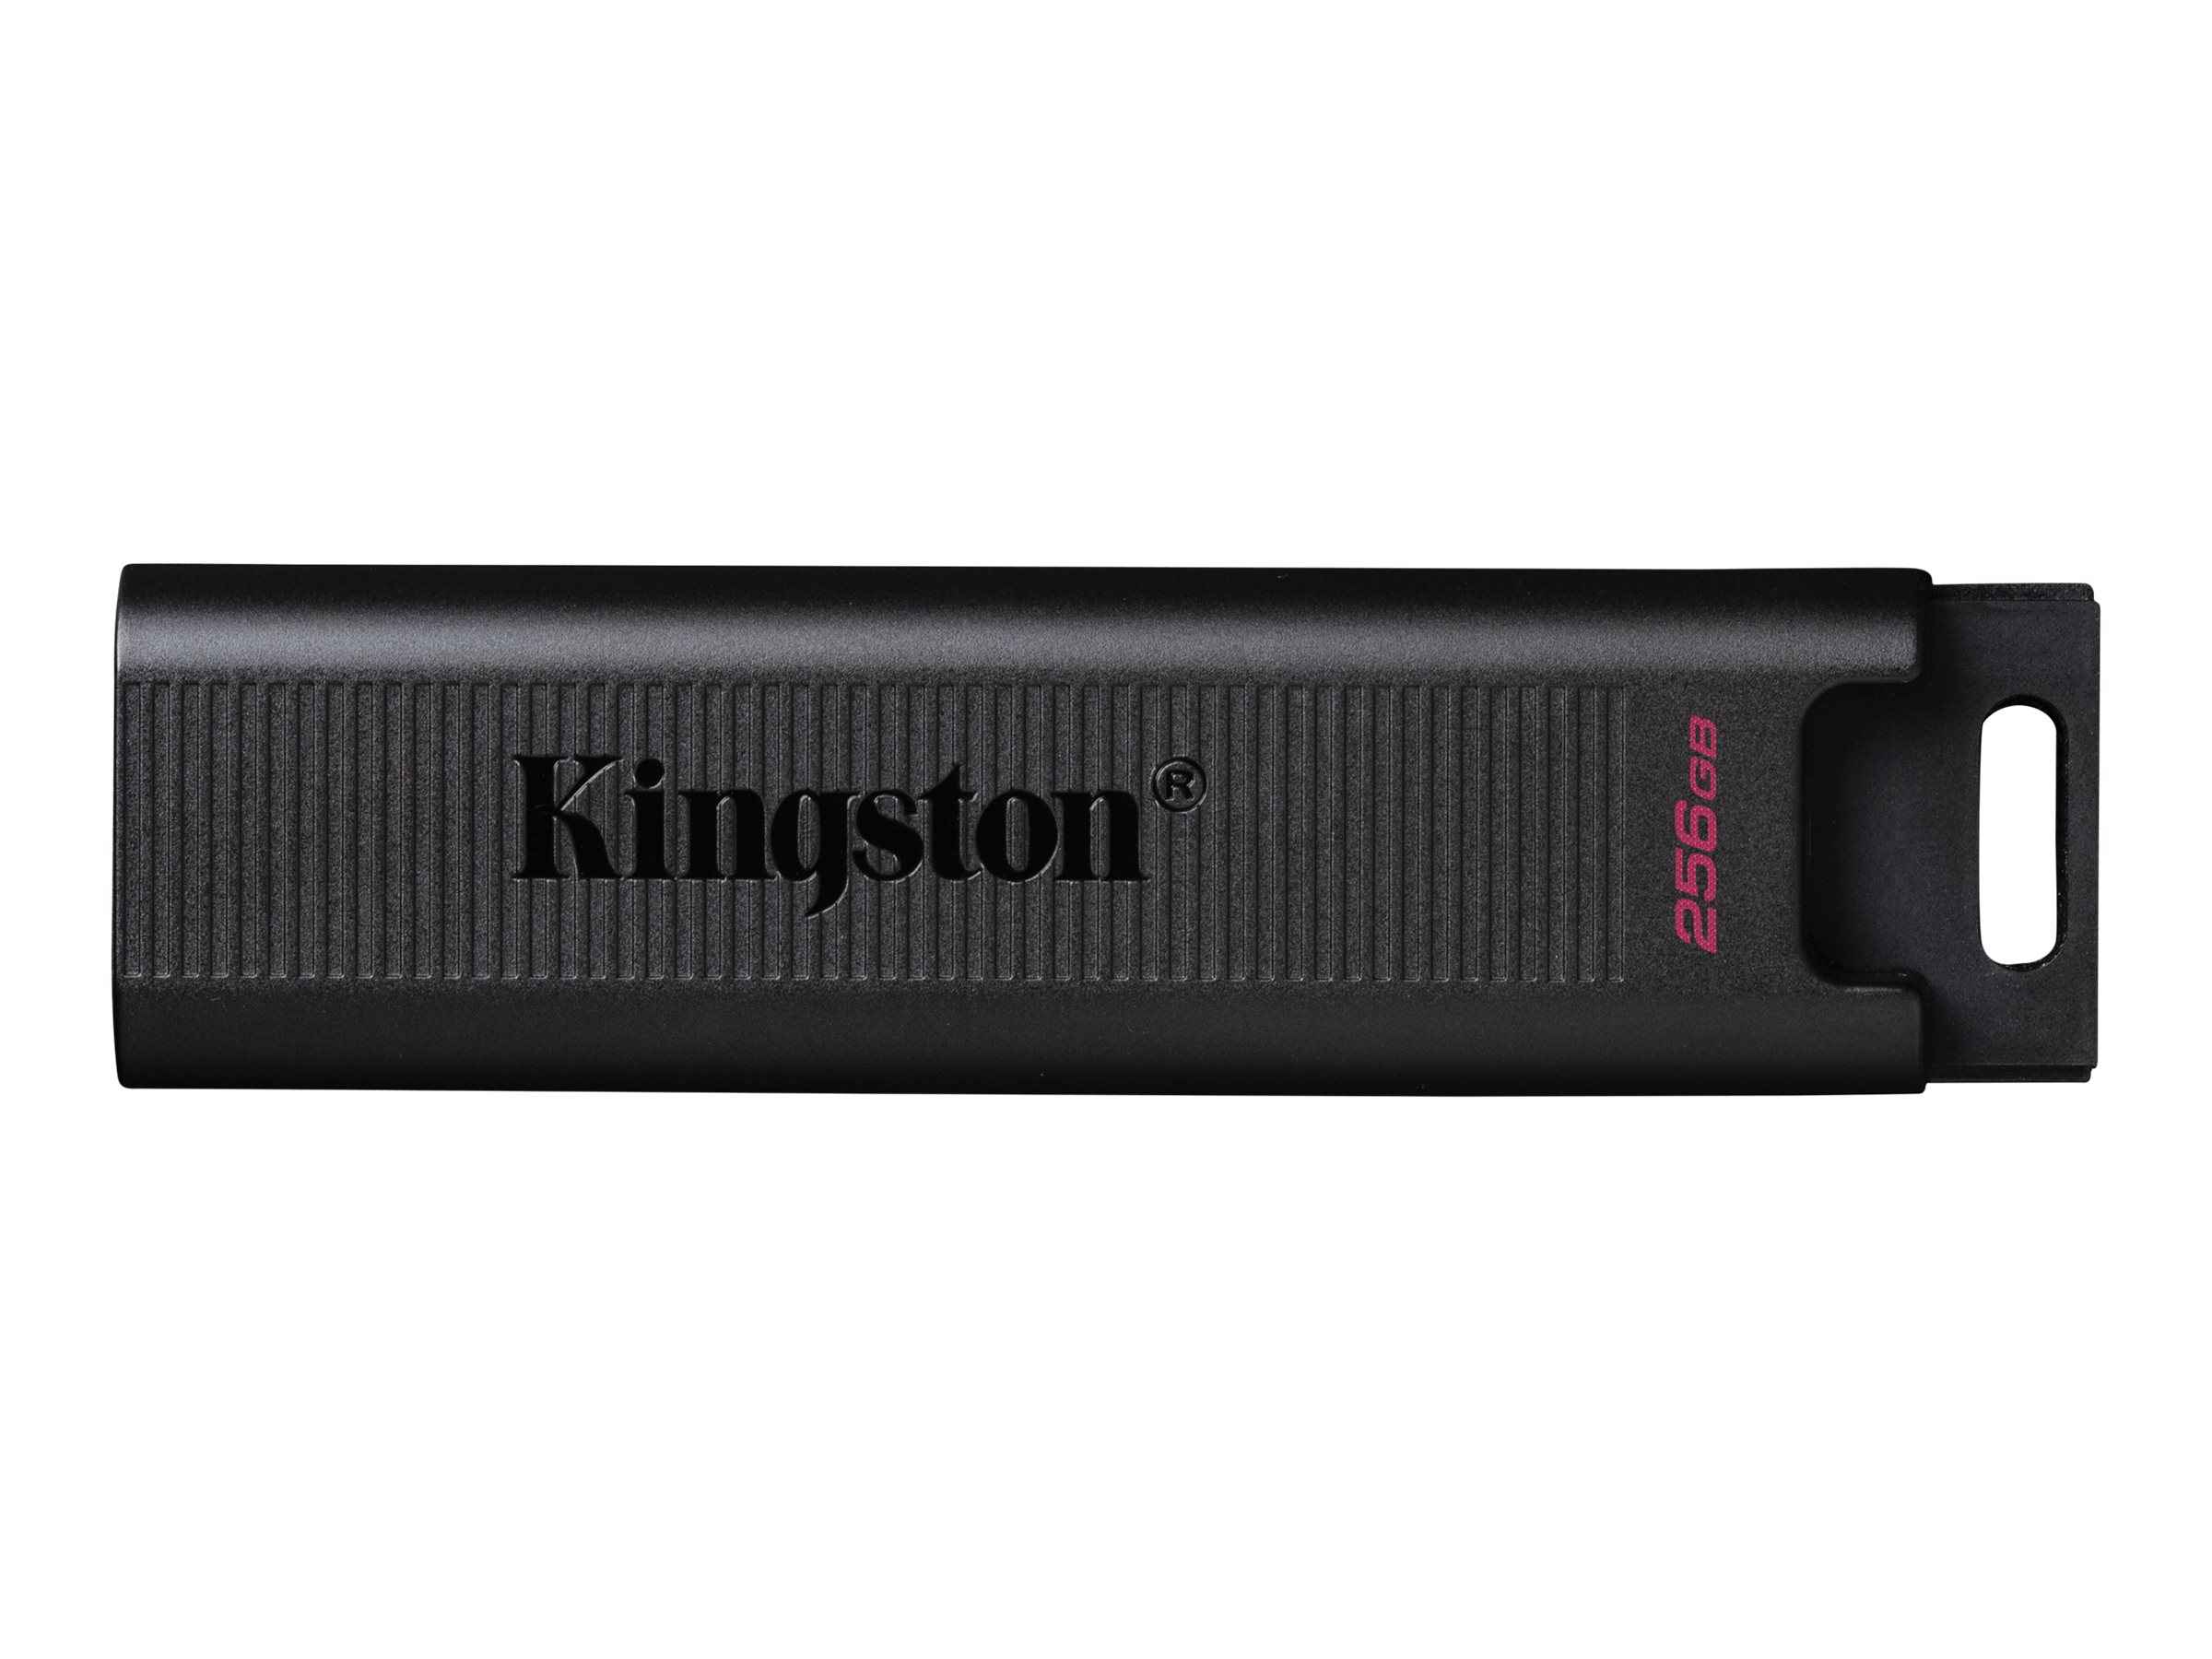 GB) Stick USB 256 DTMAX/256GB (darkslategray, KINGSTON